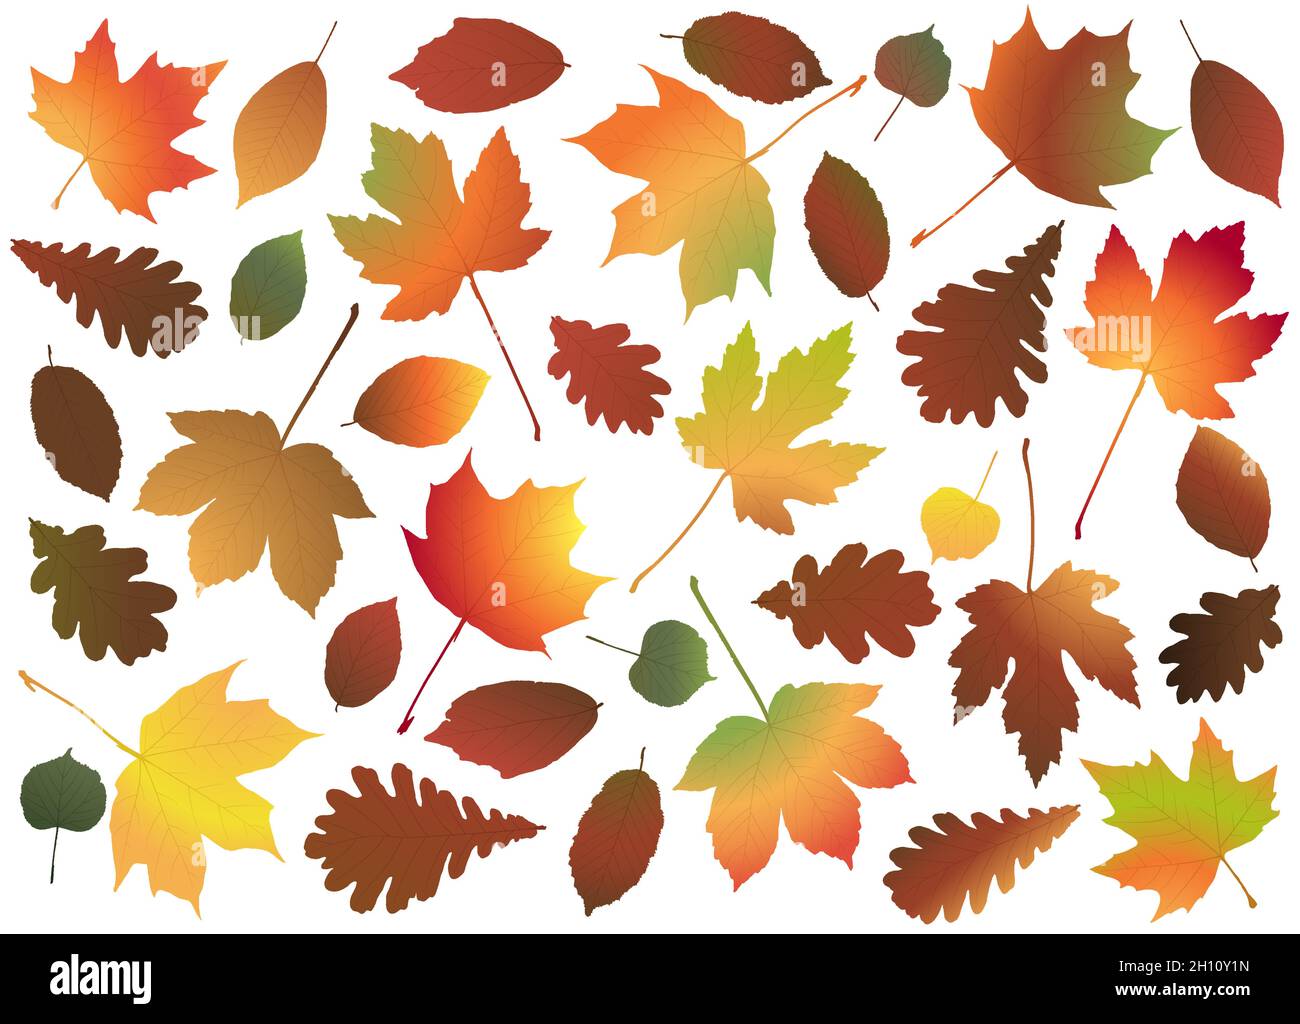 fichier vectoriel eps avec collection de feuilles d'érable, de chêne et d'autres feuilles colorées de fin d'été ou d'automne, modèle pour les projets publicitaires de fin d'année Illustration de Vecteur